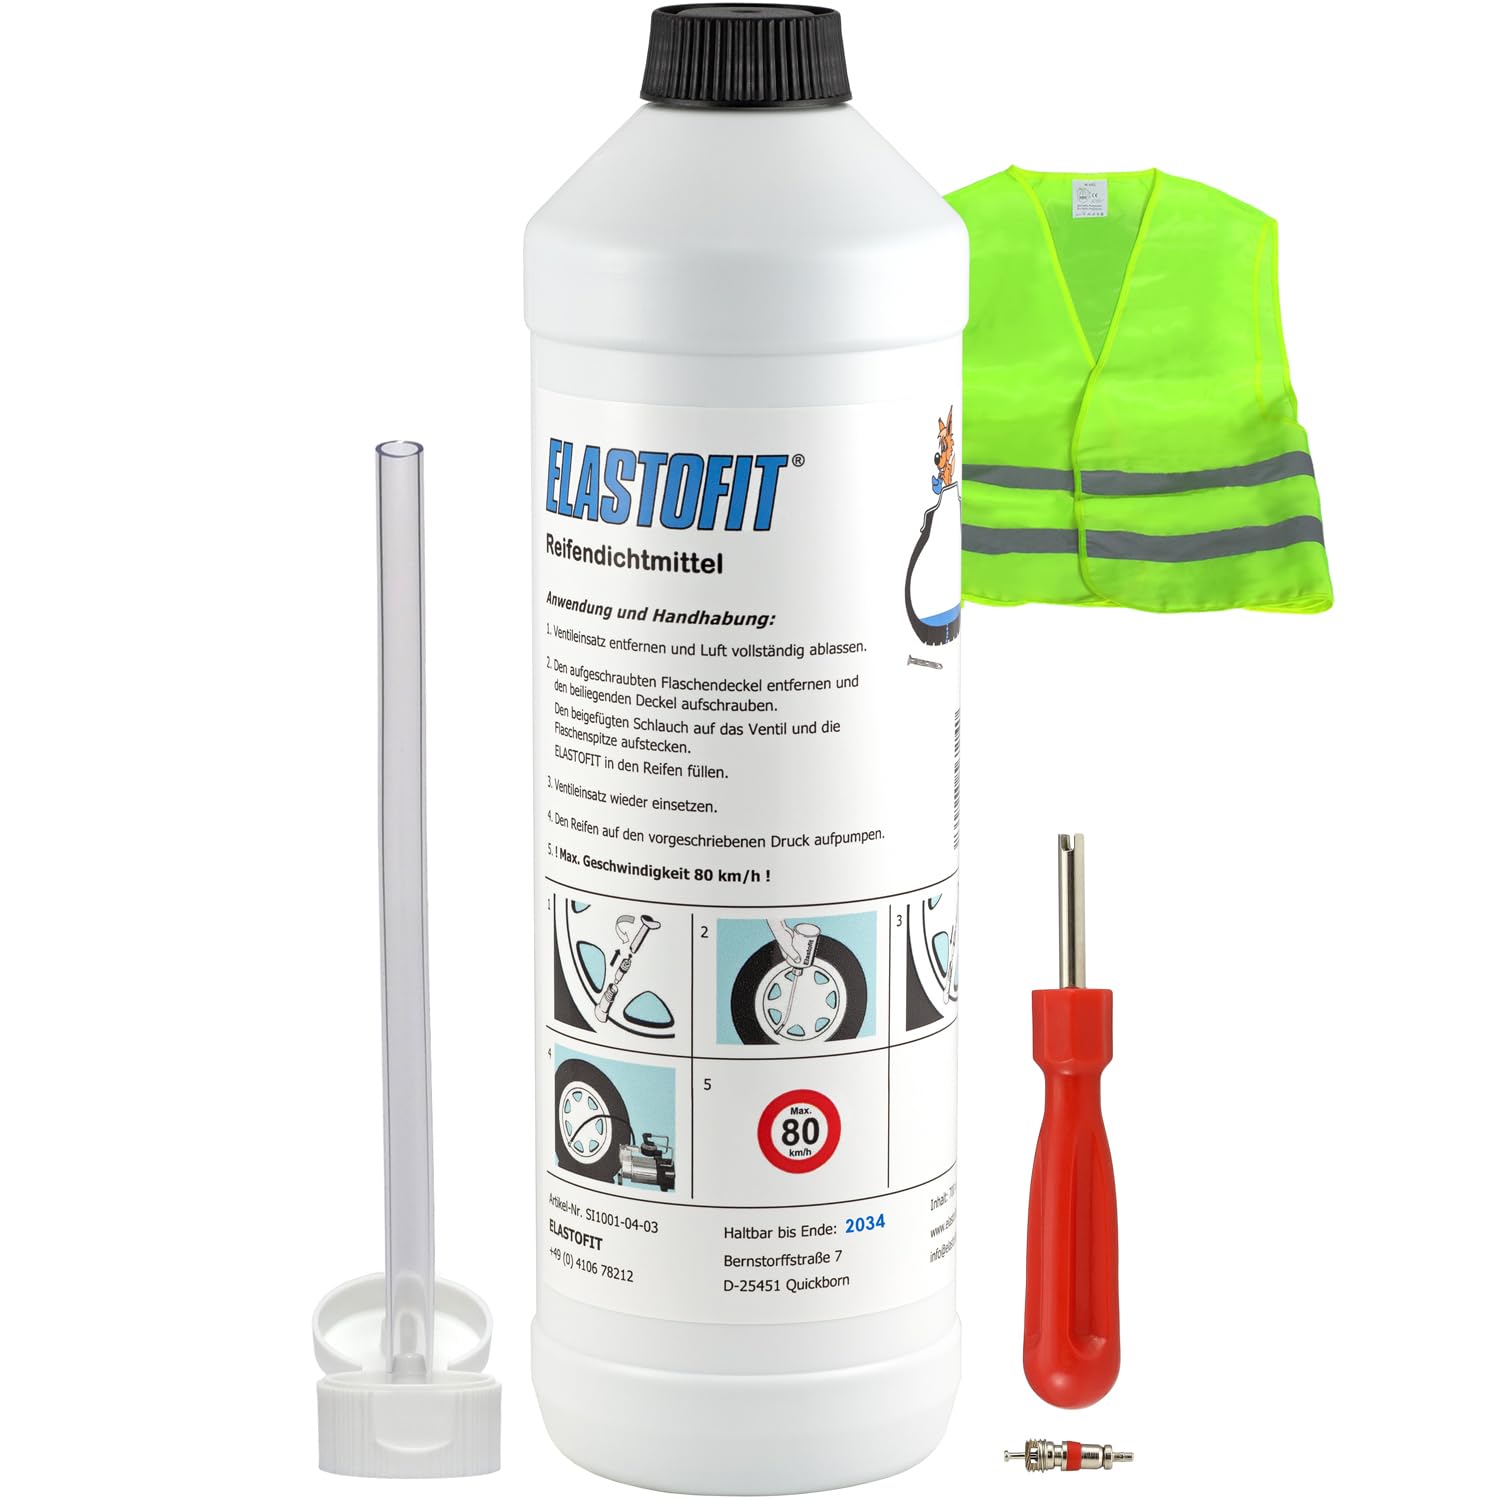 ELASTOFIT Nachfüllpack Pannenset Reifendichtmittel Ersatzflasche für alle PKW 10 Jahre haltbar (700ml Plus) von ELASTOFIT